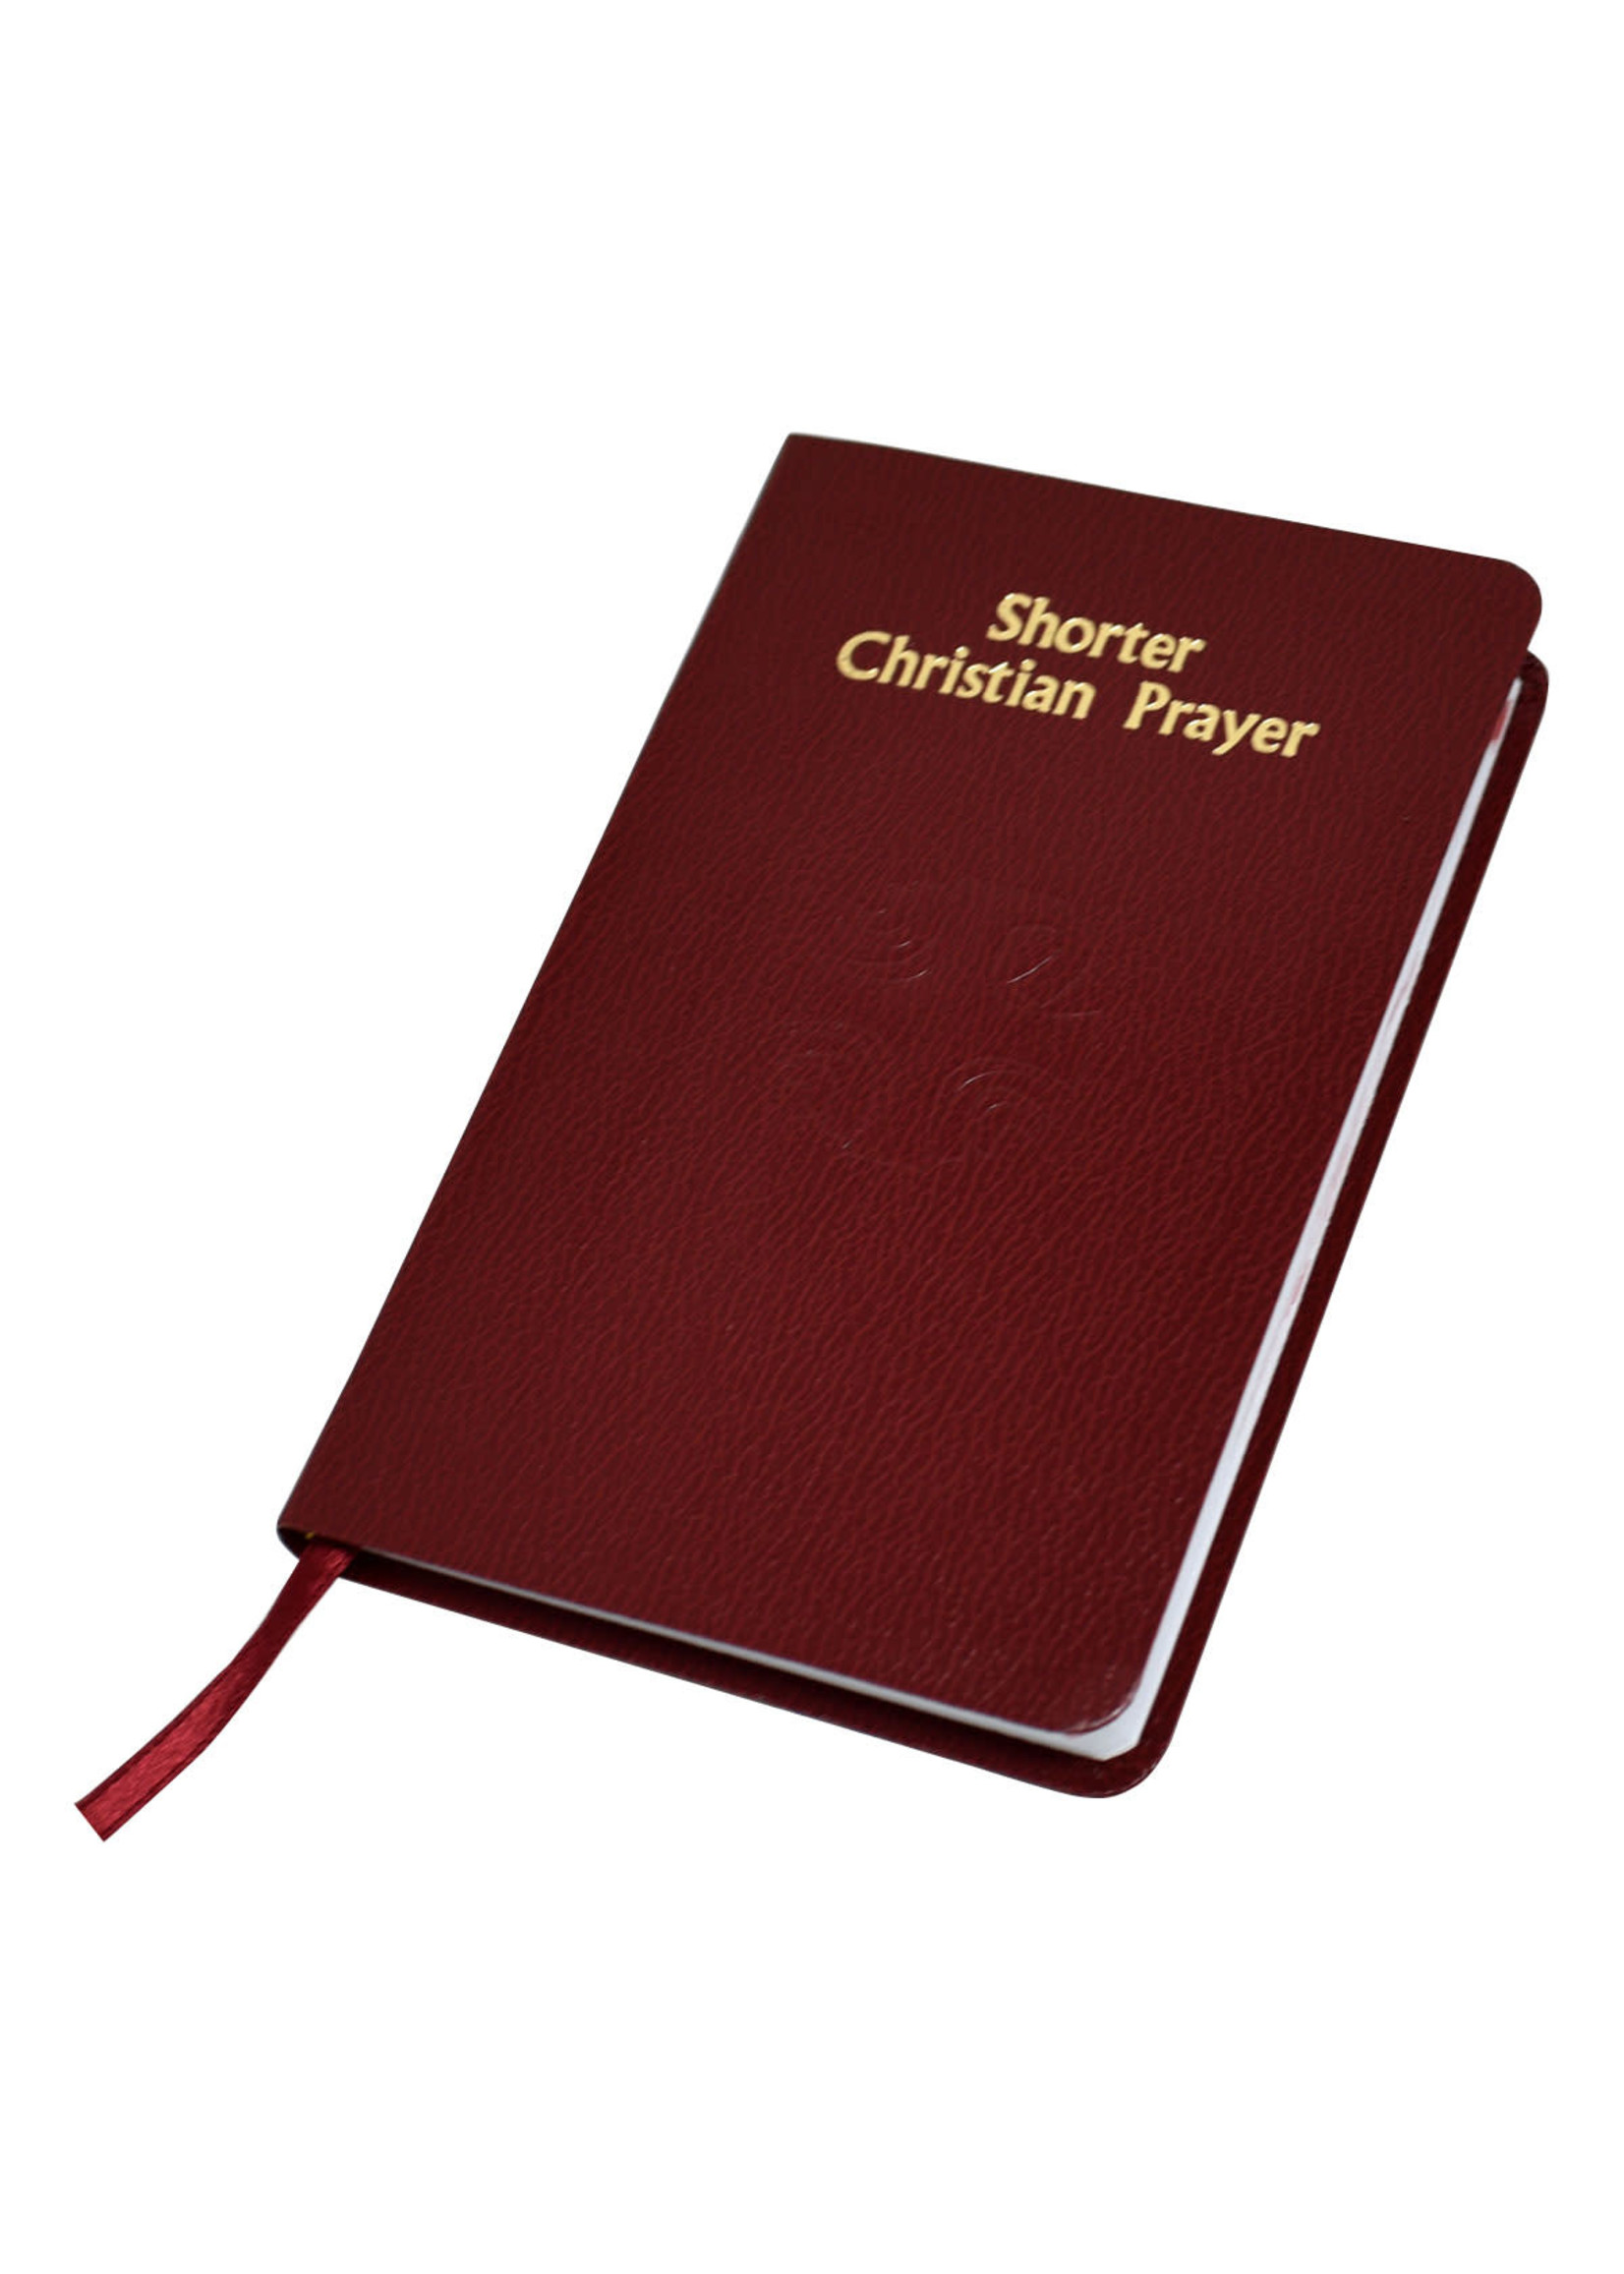 Shorter Christian Prayer - Red